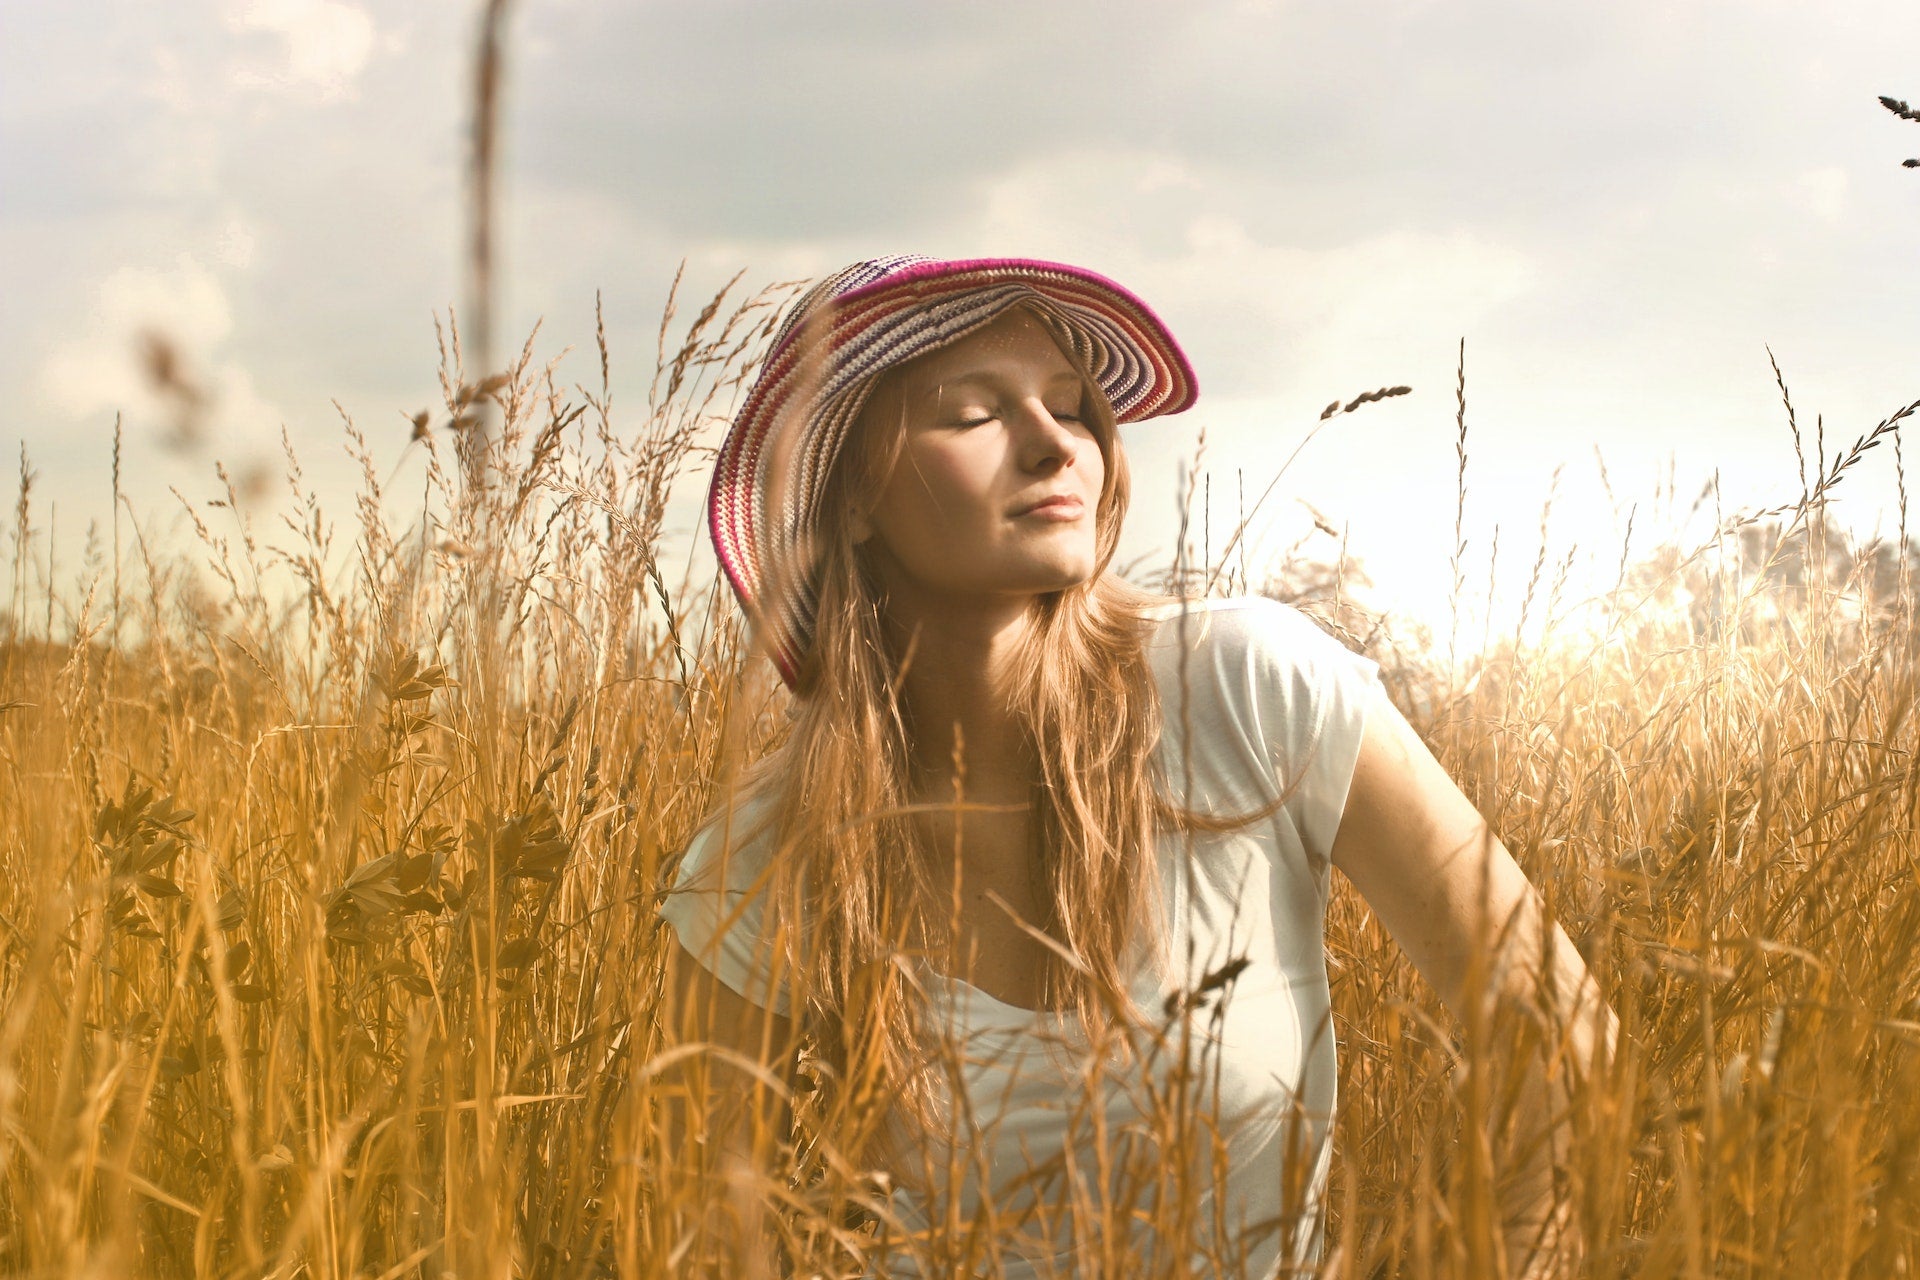 A woman enjoys a field.